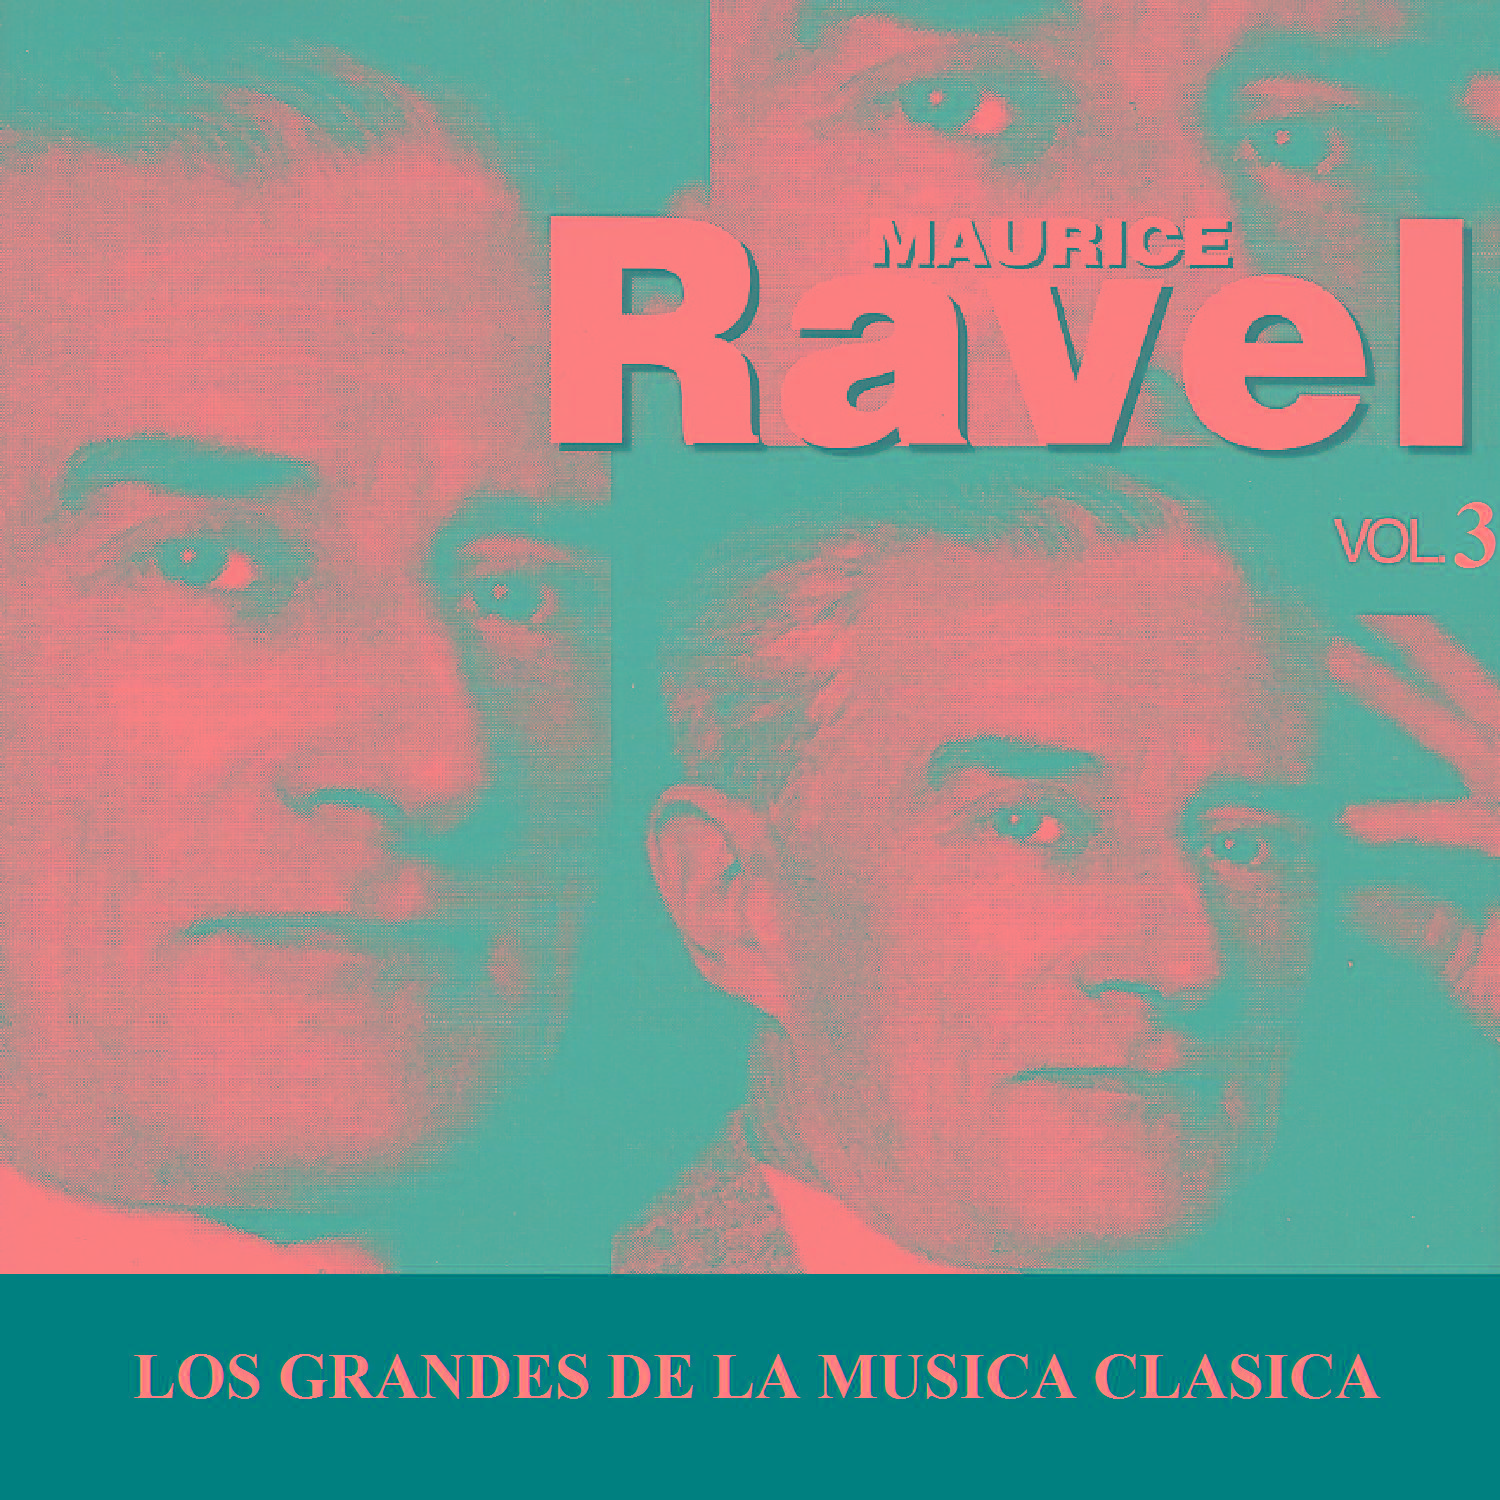 Los Grandes de la Musica Clasica - Maurice Ravel Vol. 3